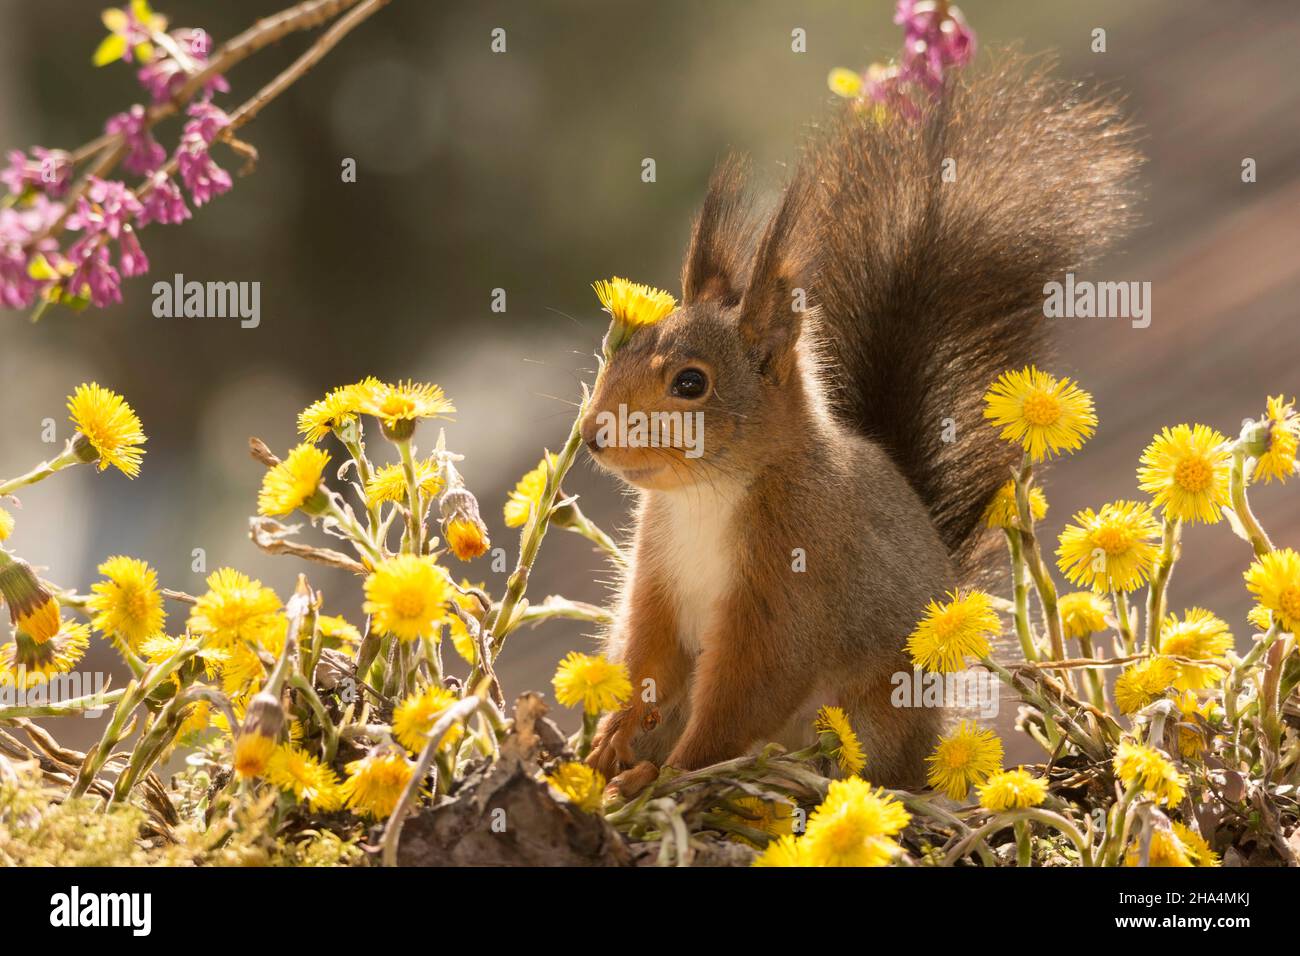 Nahaufnahme des roten Eichhörnchens auf Blumenzweigen mit offenem Mund, der nach oben reicht Stockfoto